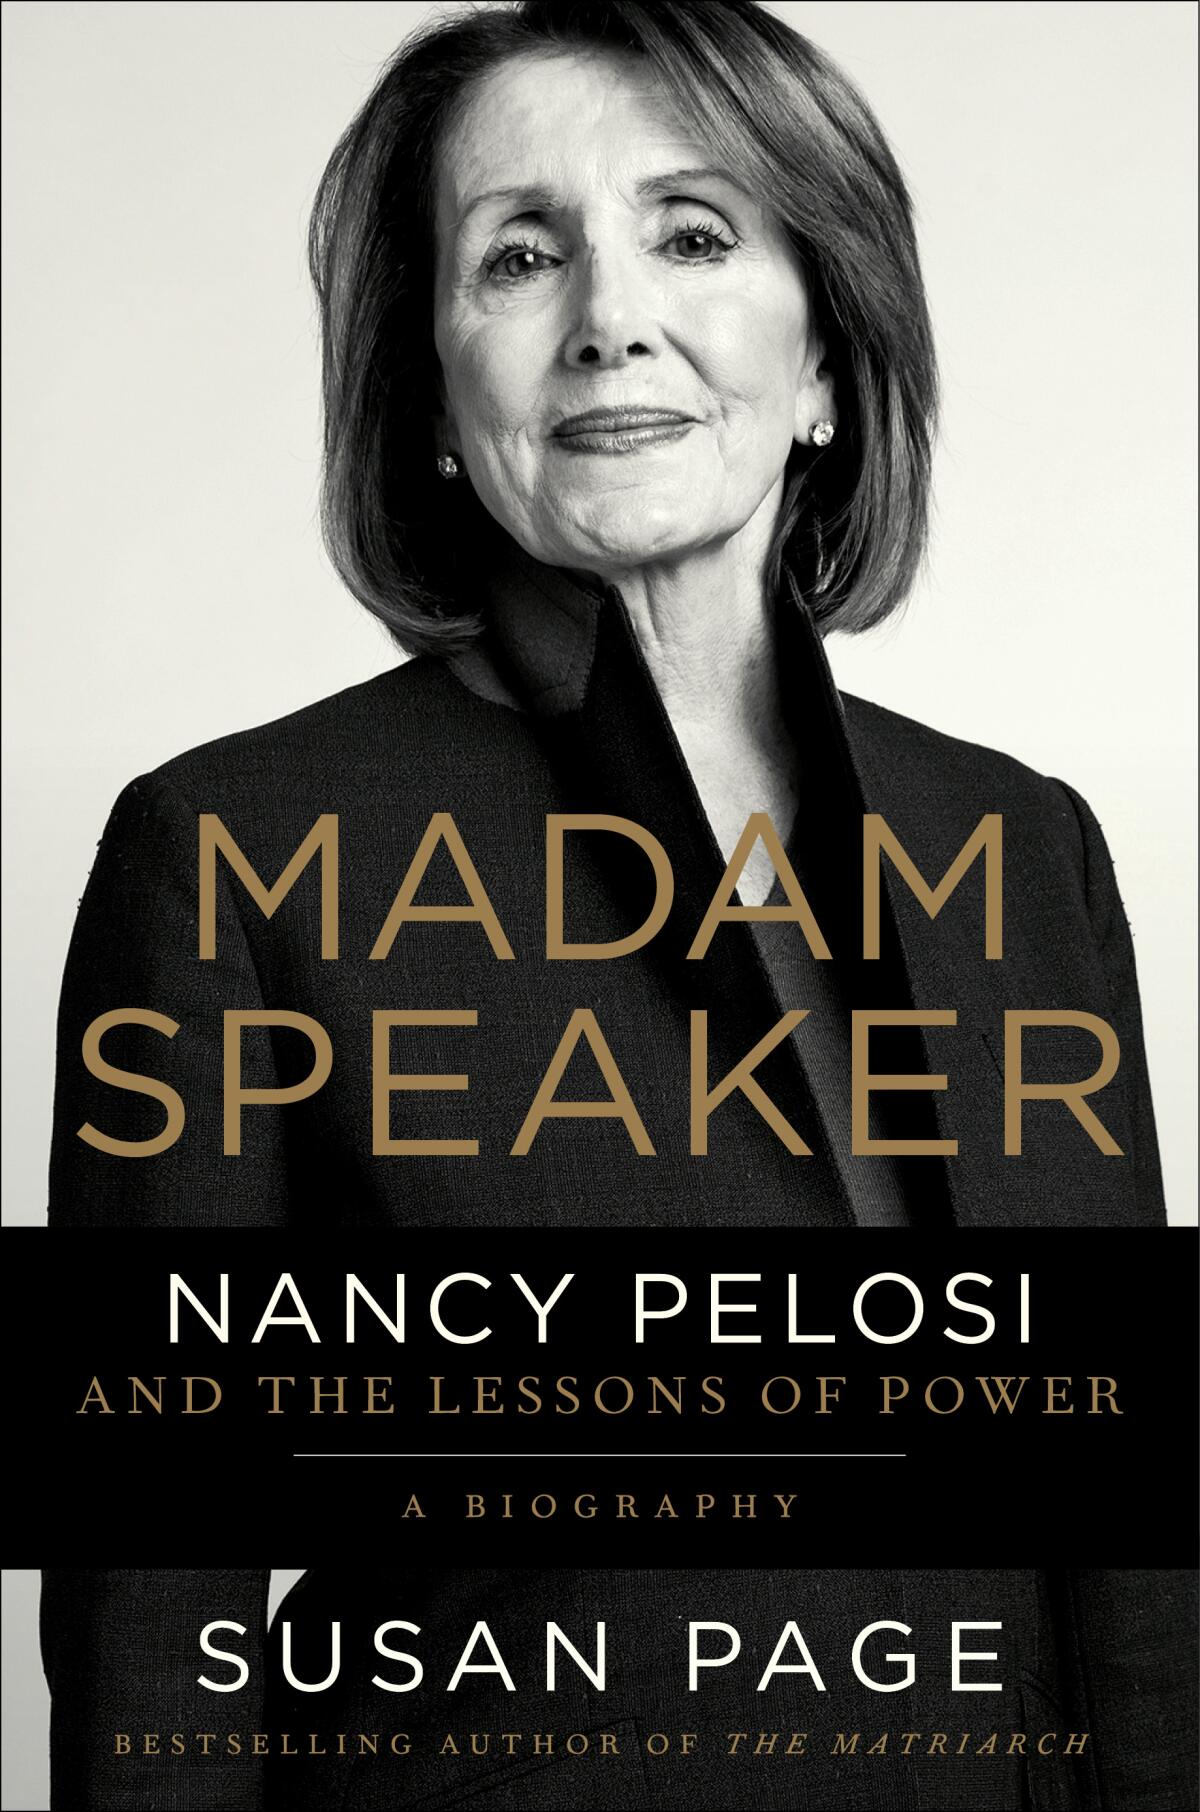 A portrait of Nancy Pelosi on a book cover